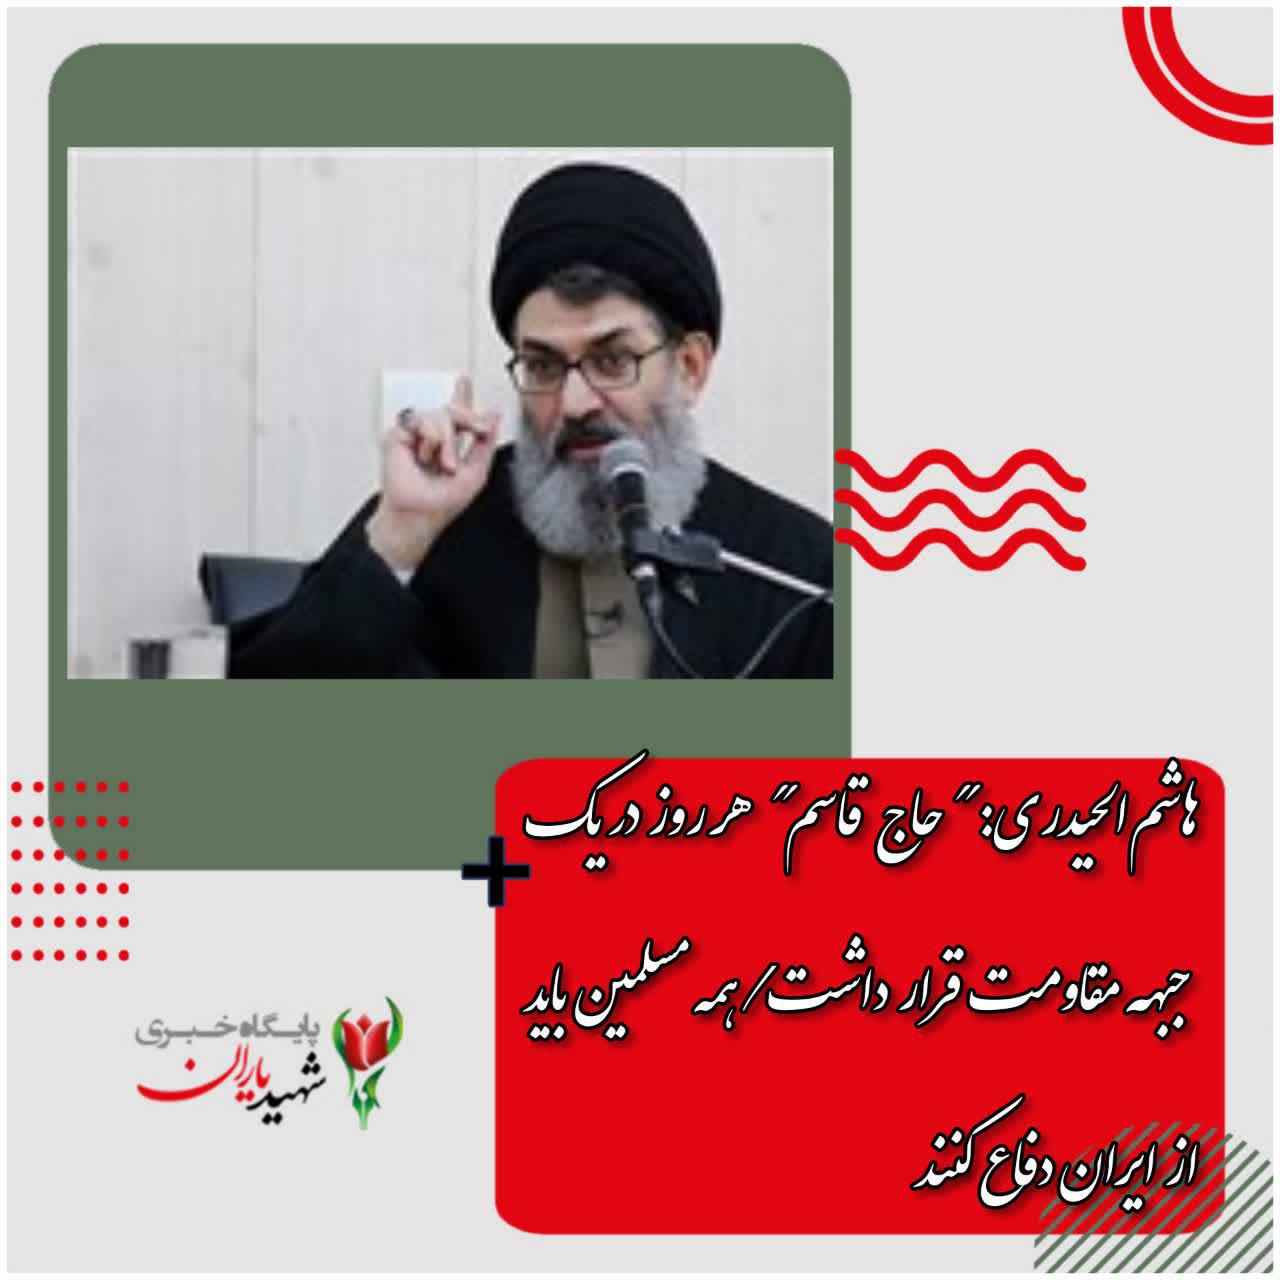 هاشم‌الحیدری: “حاج قاسم” هر روز در یک جبهه مقاومت قرار داشت همه مسلمین باید از ایران دفاع کنند